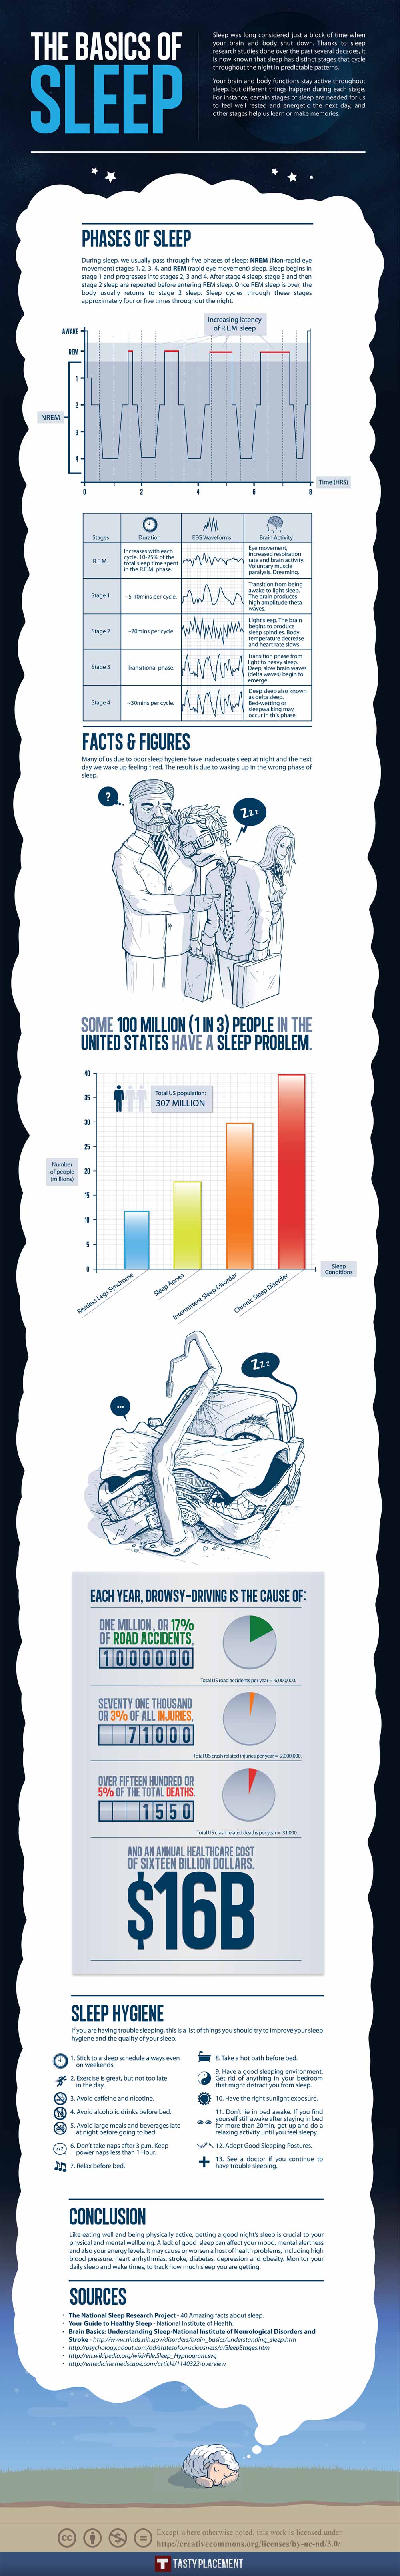 sleep-basics-explained-in-infographic